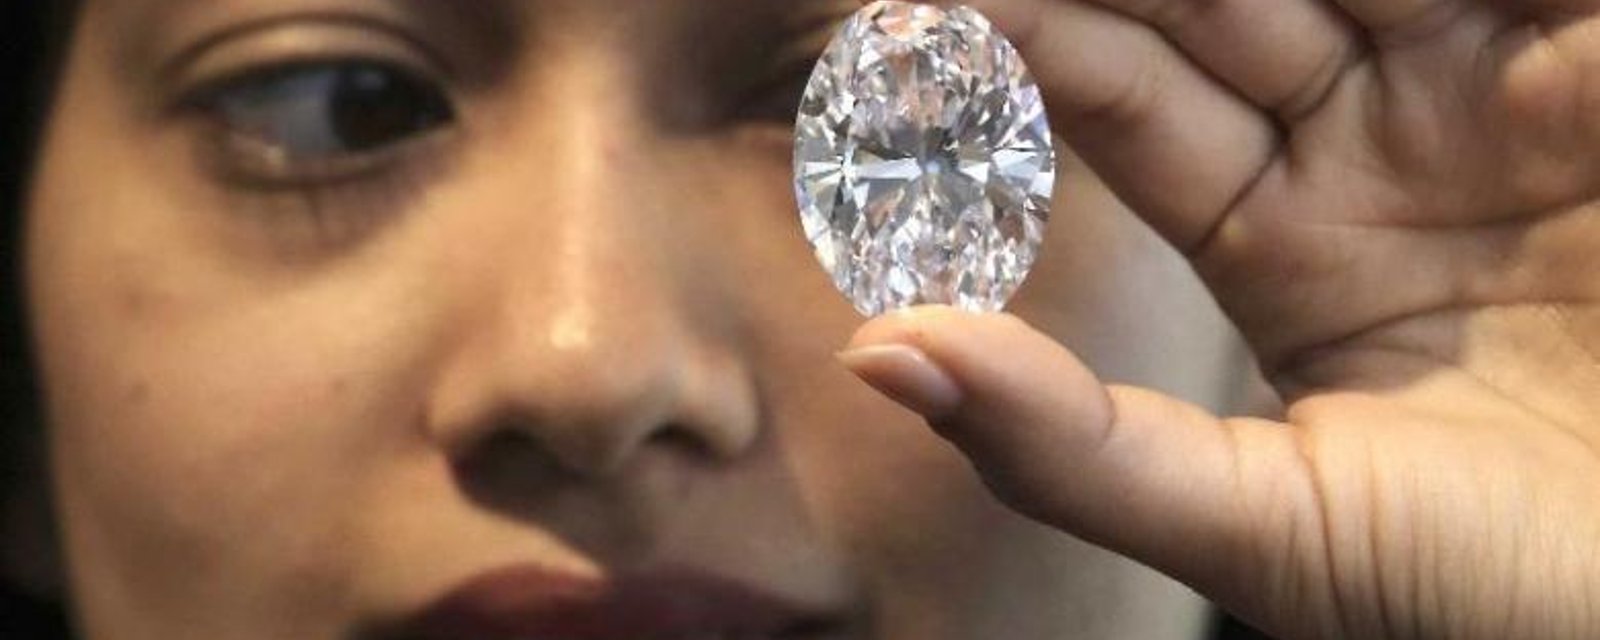 Comment reconnaître un vrai diamant: 5 astuces faciles!